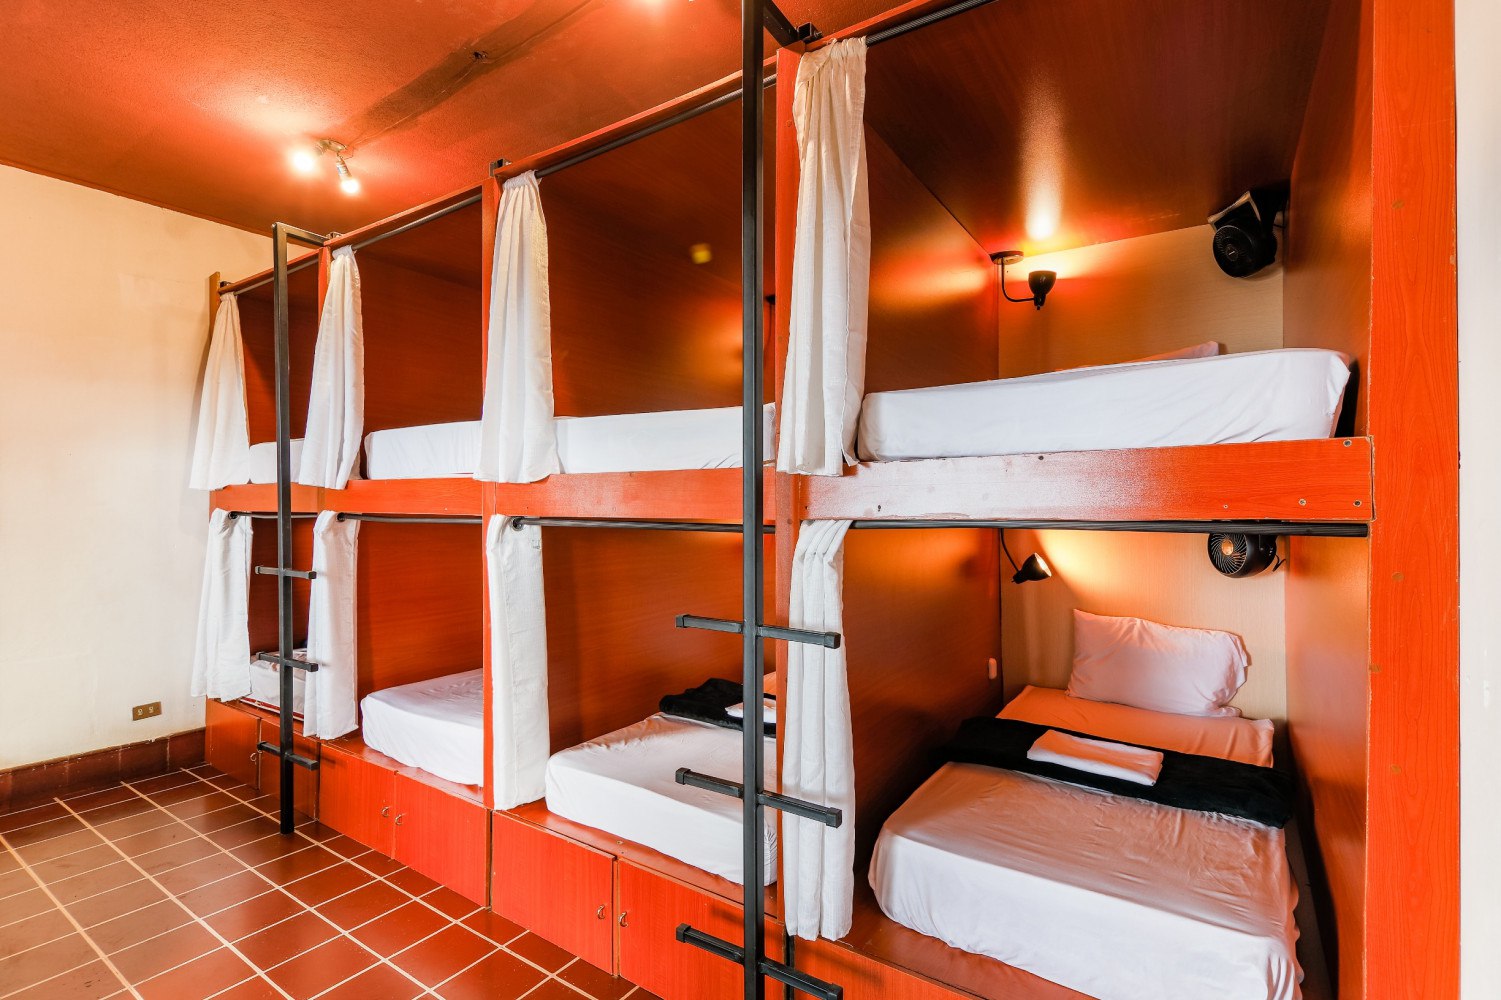 Оборудование общежития. Капсульный хостел МСК. Двухъярусные кровати для хостелов. Капсульные кровати для хостела. Капсулы для хостела.